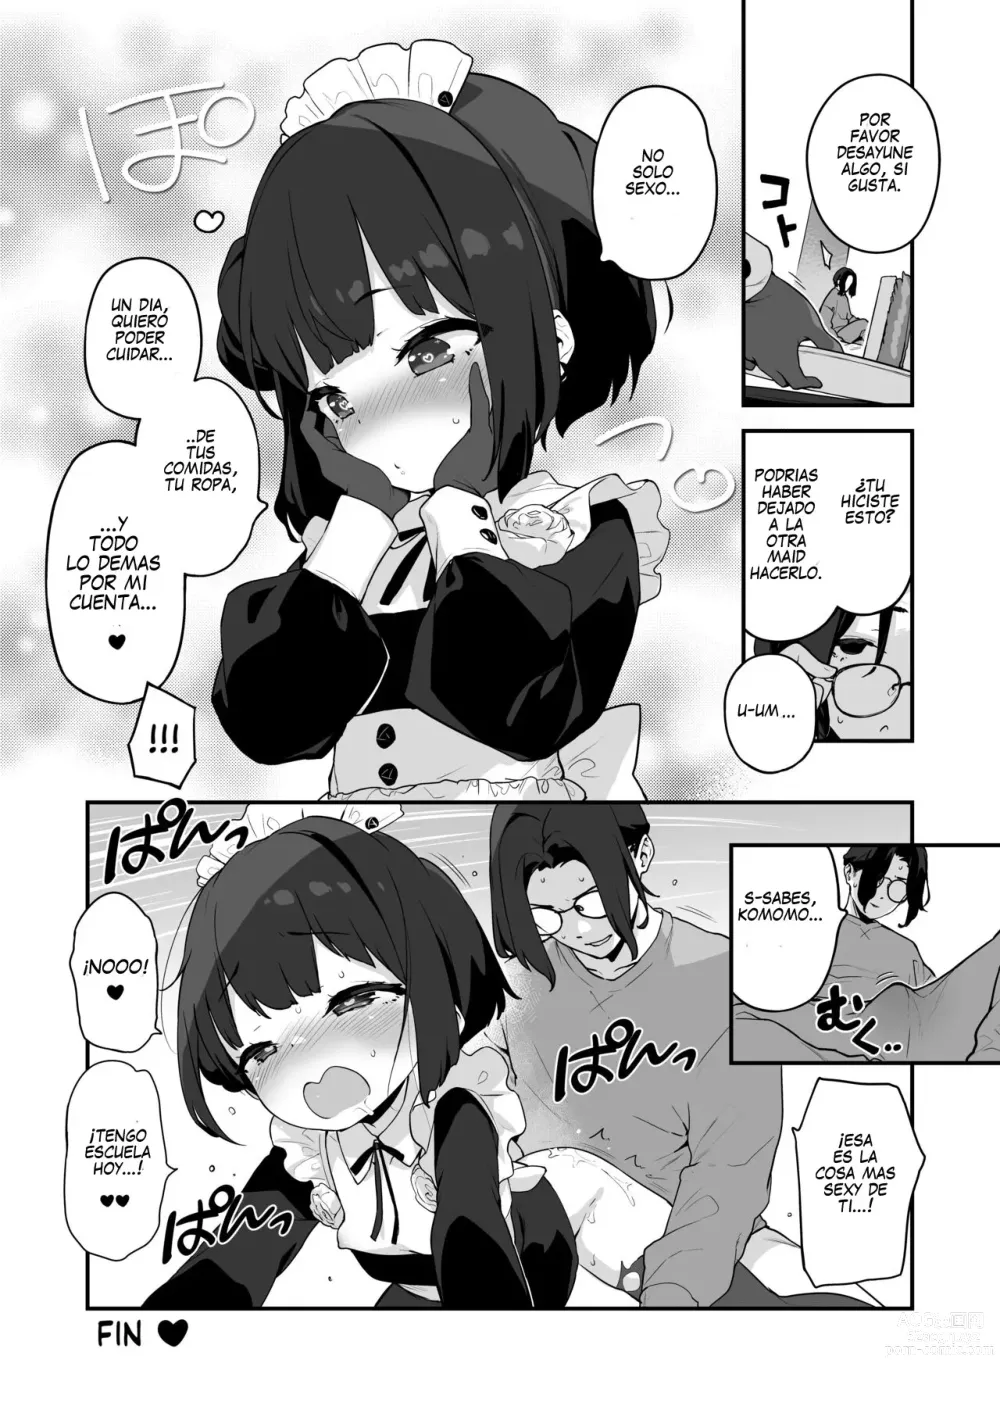 Page 56 of doujinshi Komomo Es Una Loli Maid Vertedero De Semen Con Todos Sus Agujeros Solo Para Su Amo